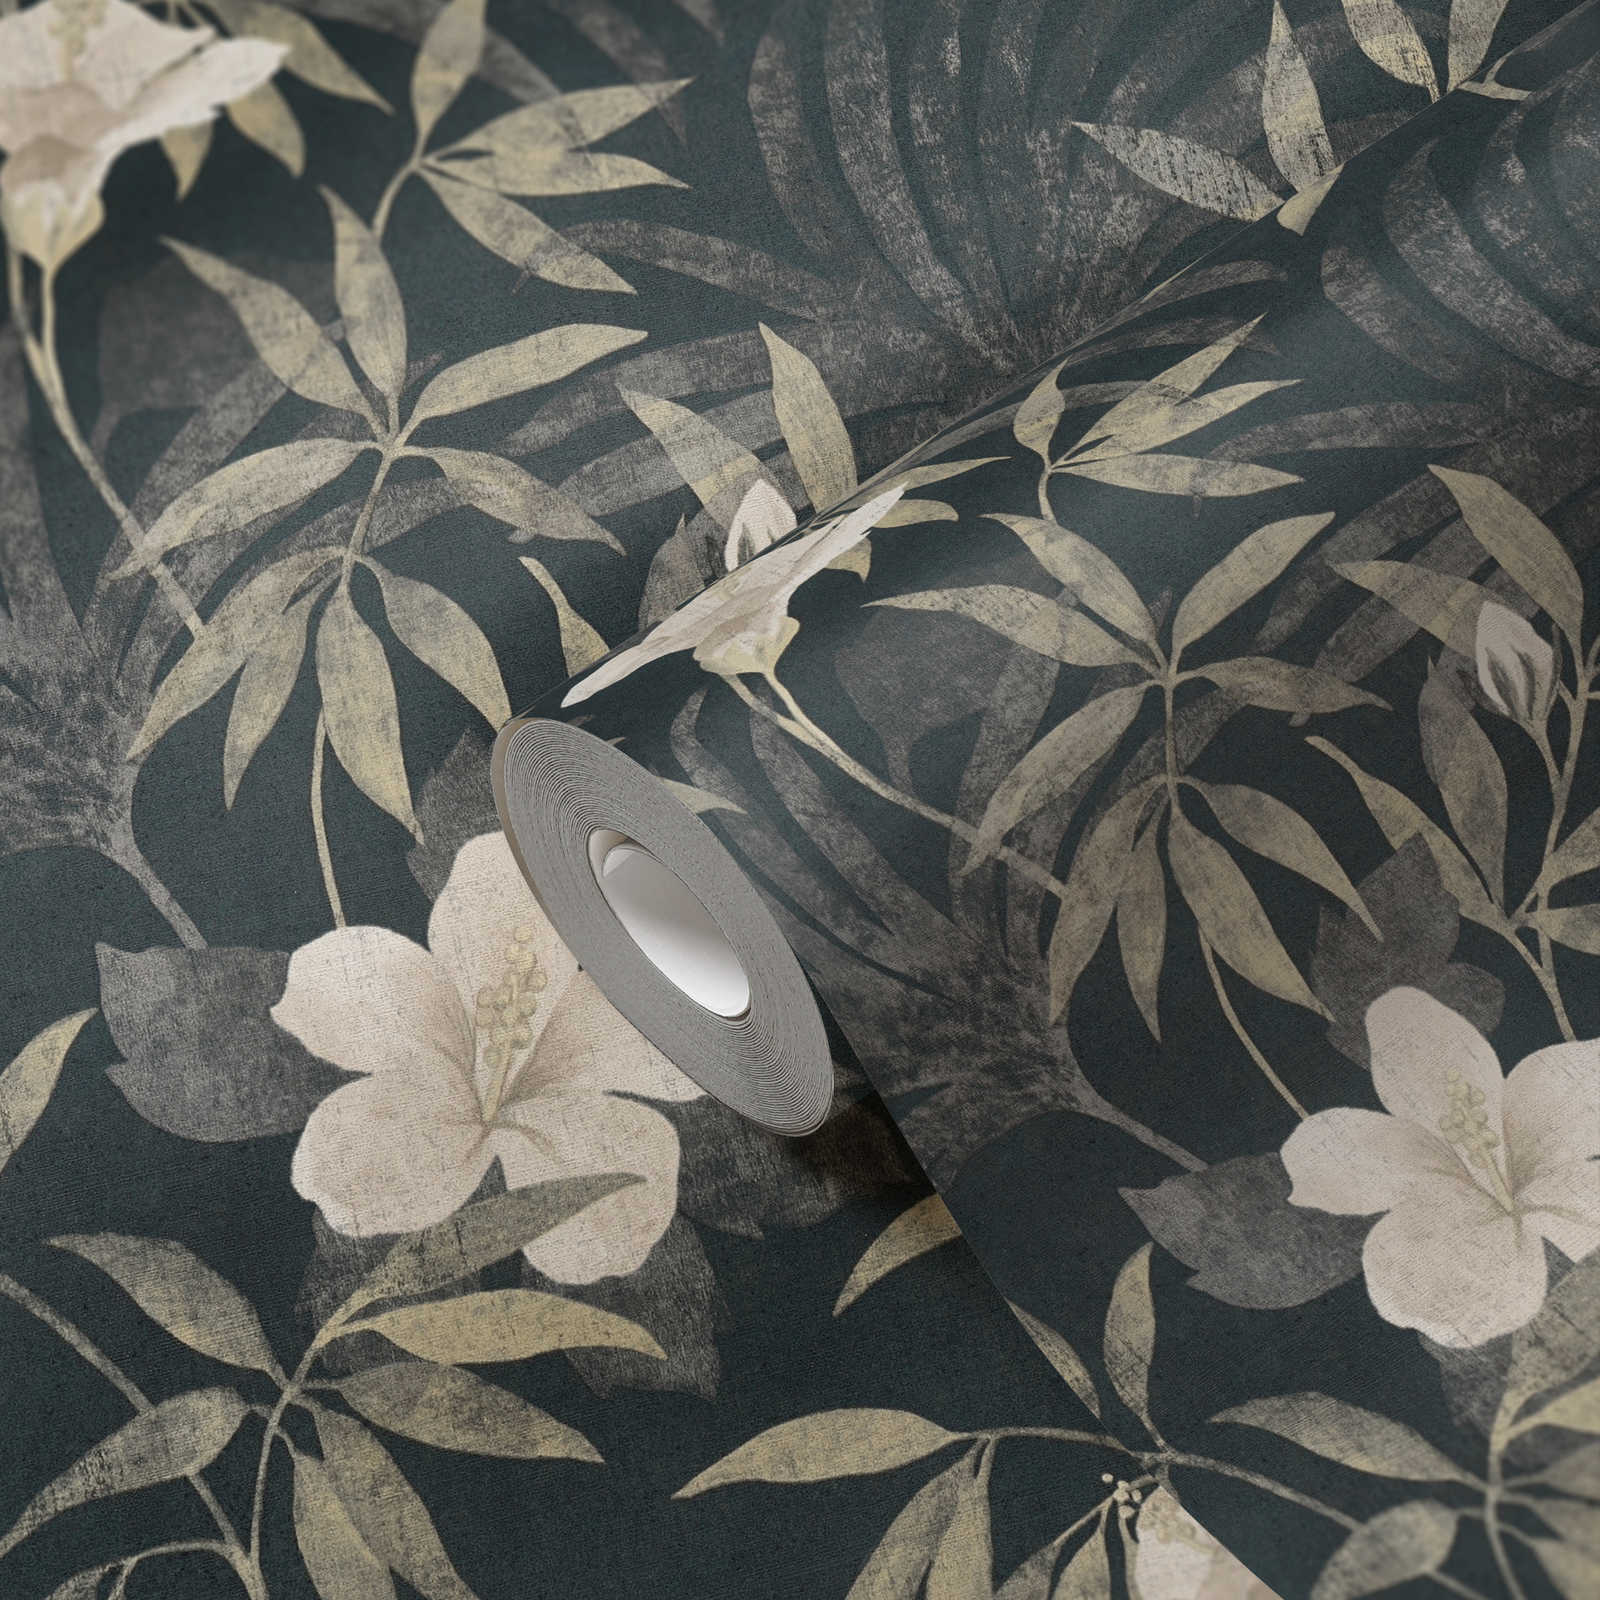             Dschungel Tapete Retro Muster mit tropischem Design – Braun, Grau, Schwarz
        